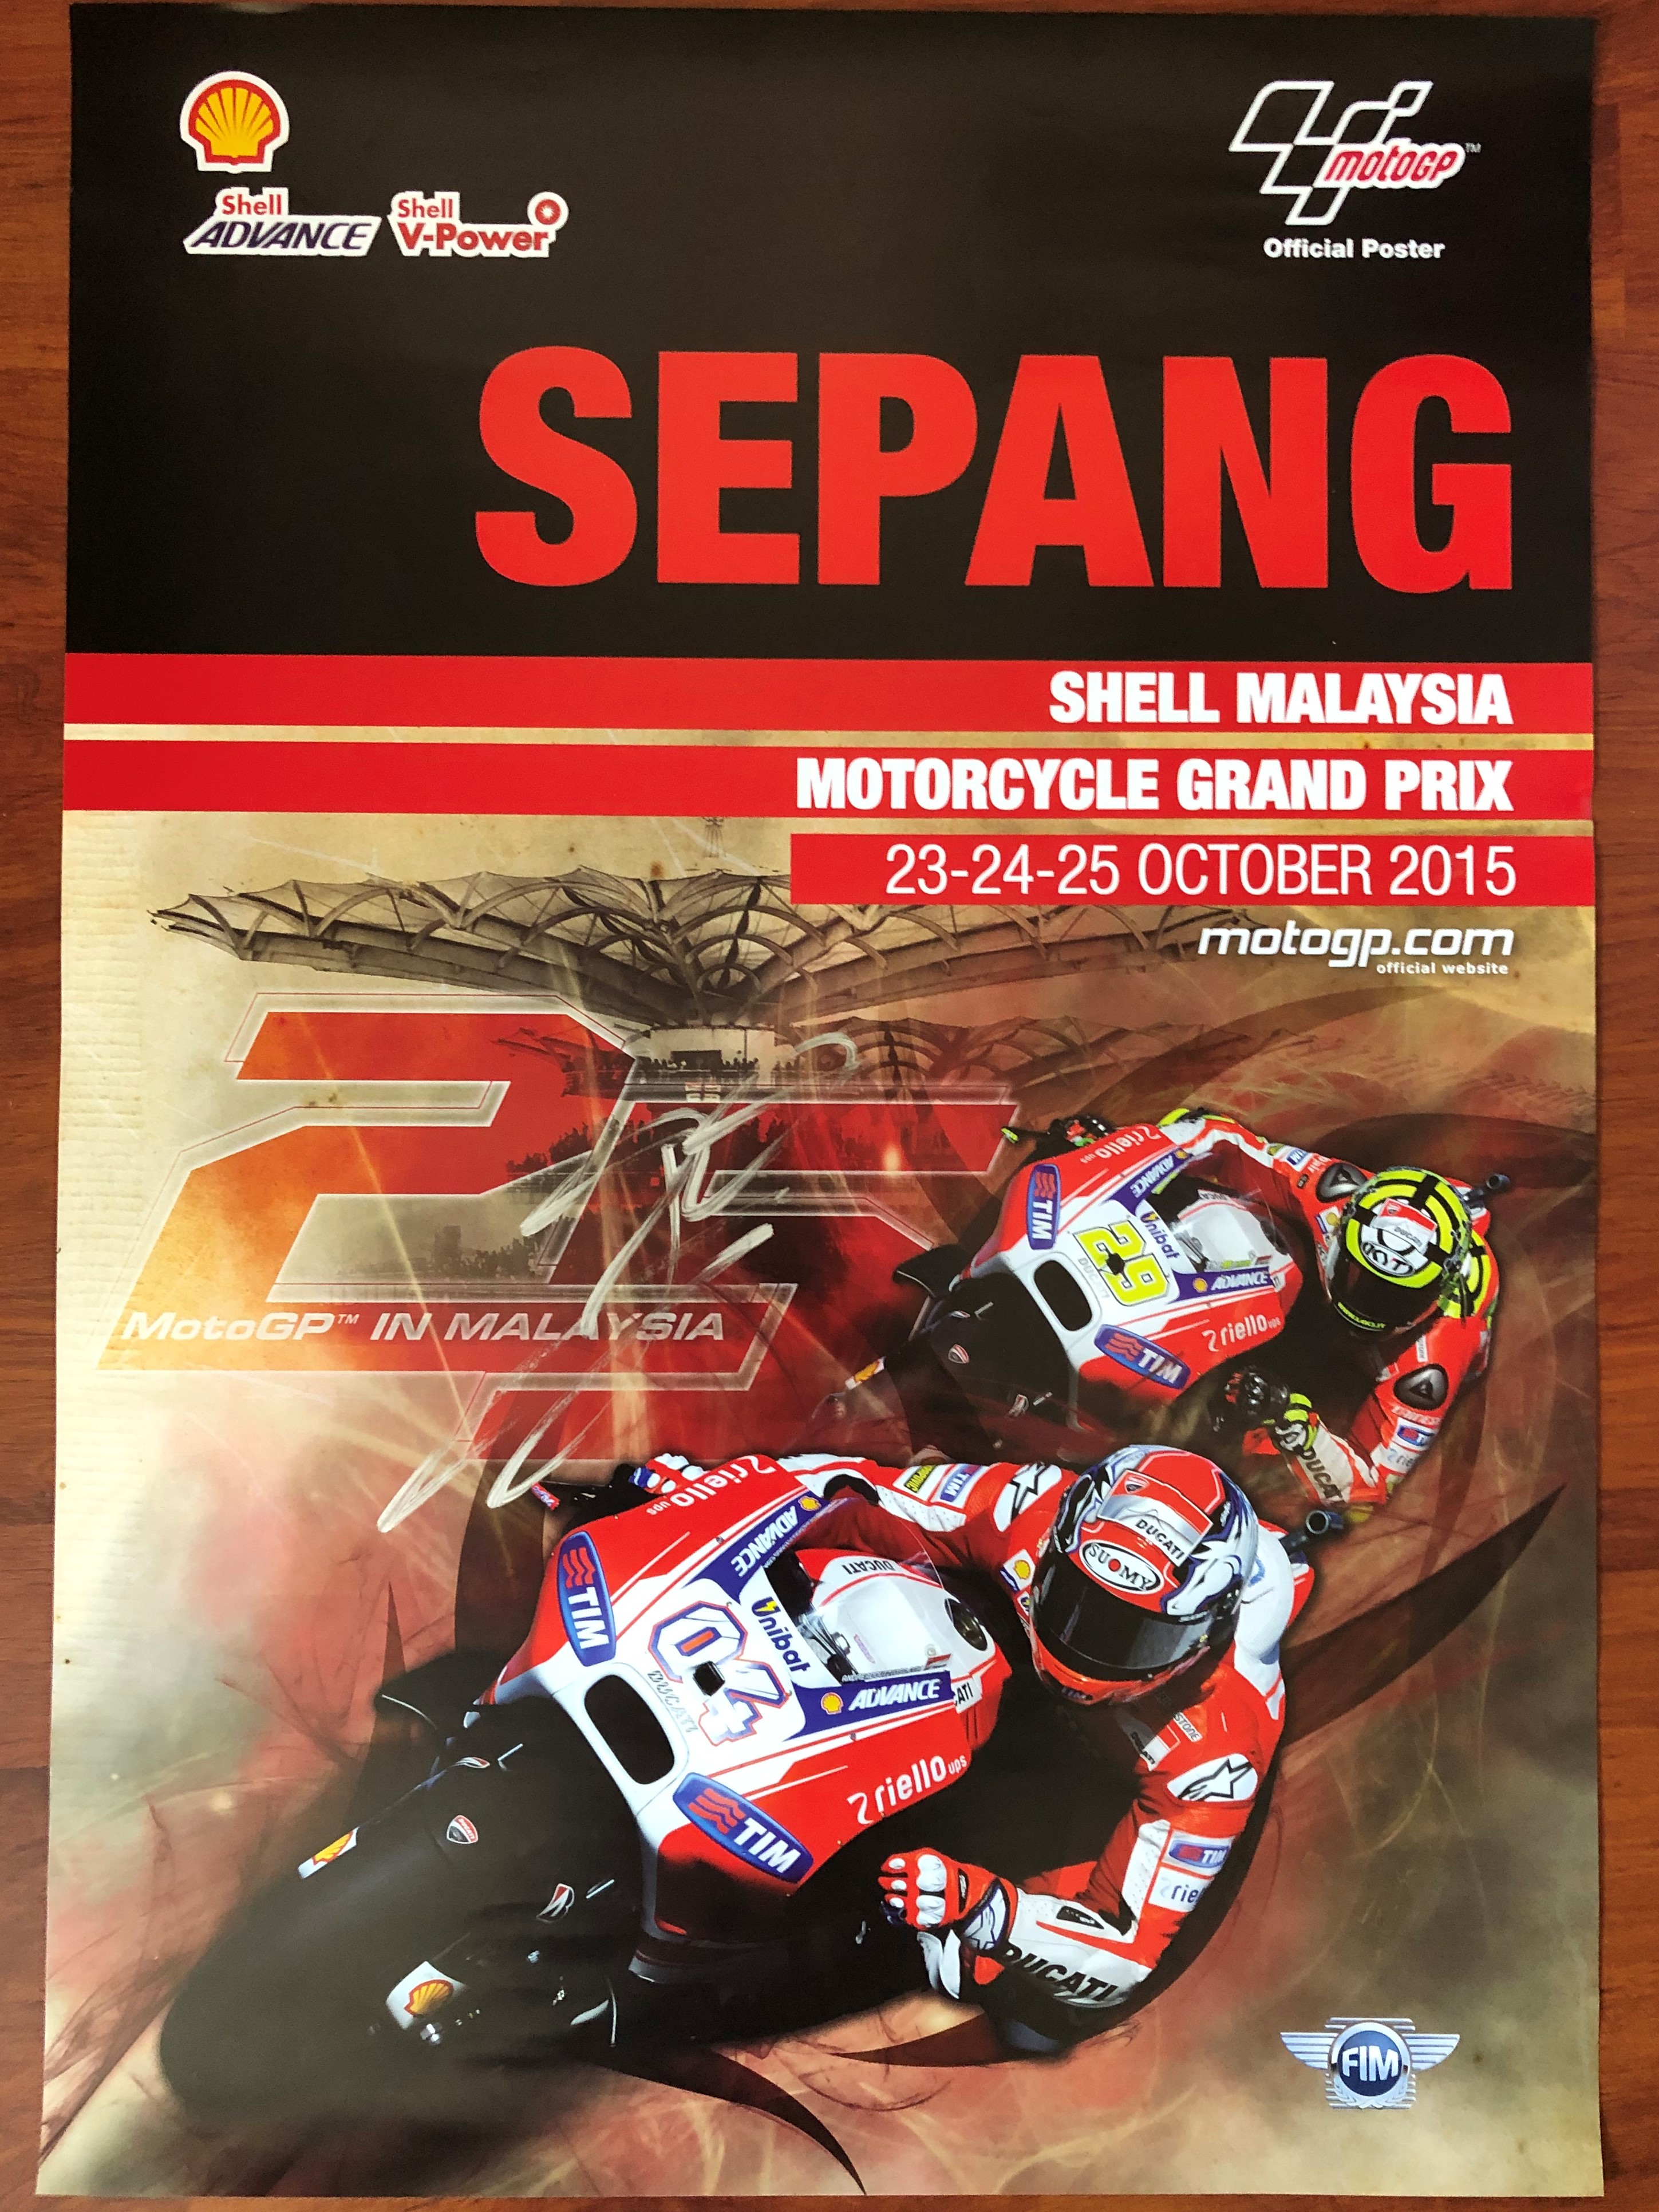 โปสเตอร์ MotoGP #99 Jorge Lorenzo เซ็นสัญญากับโปสเตอร์อย่างเป็นทางการของ MotoGP Malaysia 2015